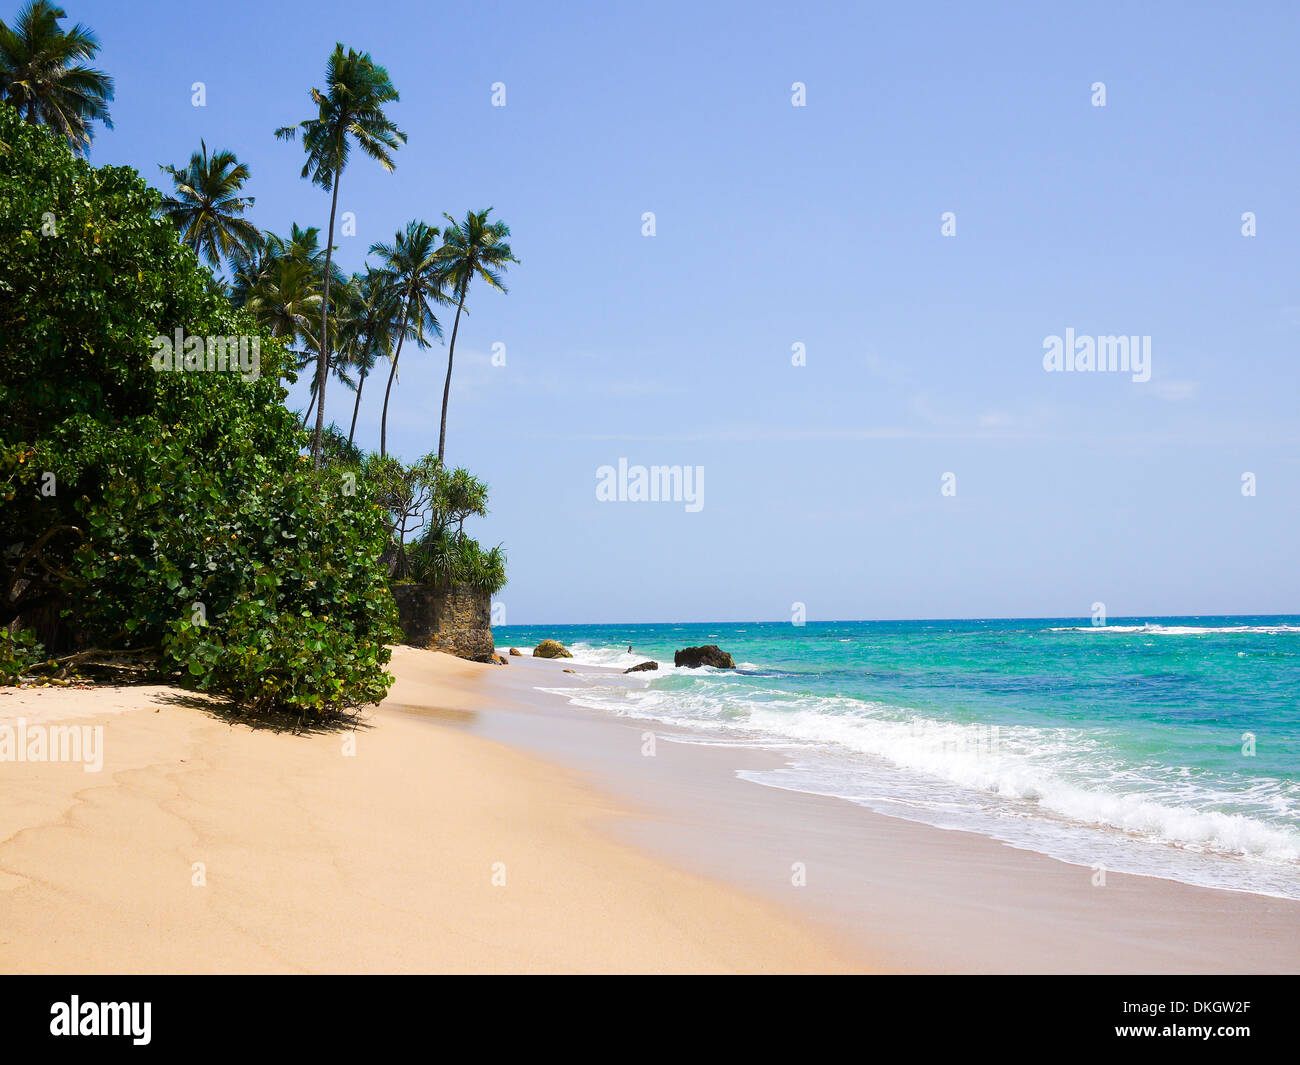 Kubulgama beach close to Mirissa, Sri Lanka Stock Photo